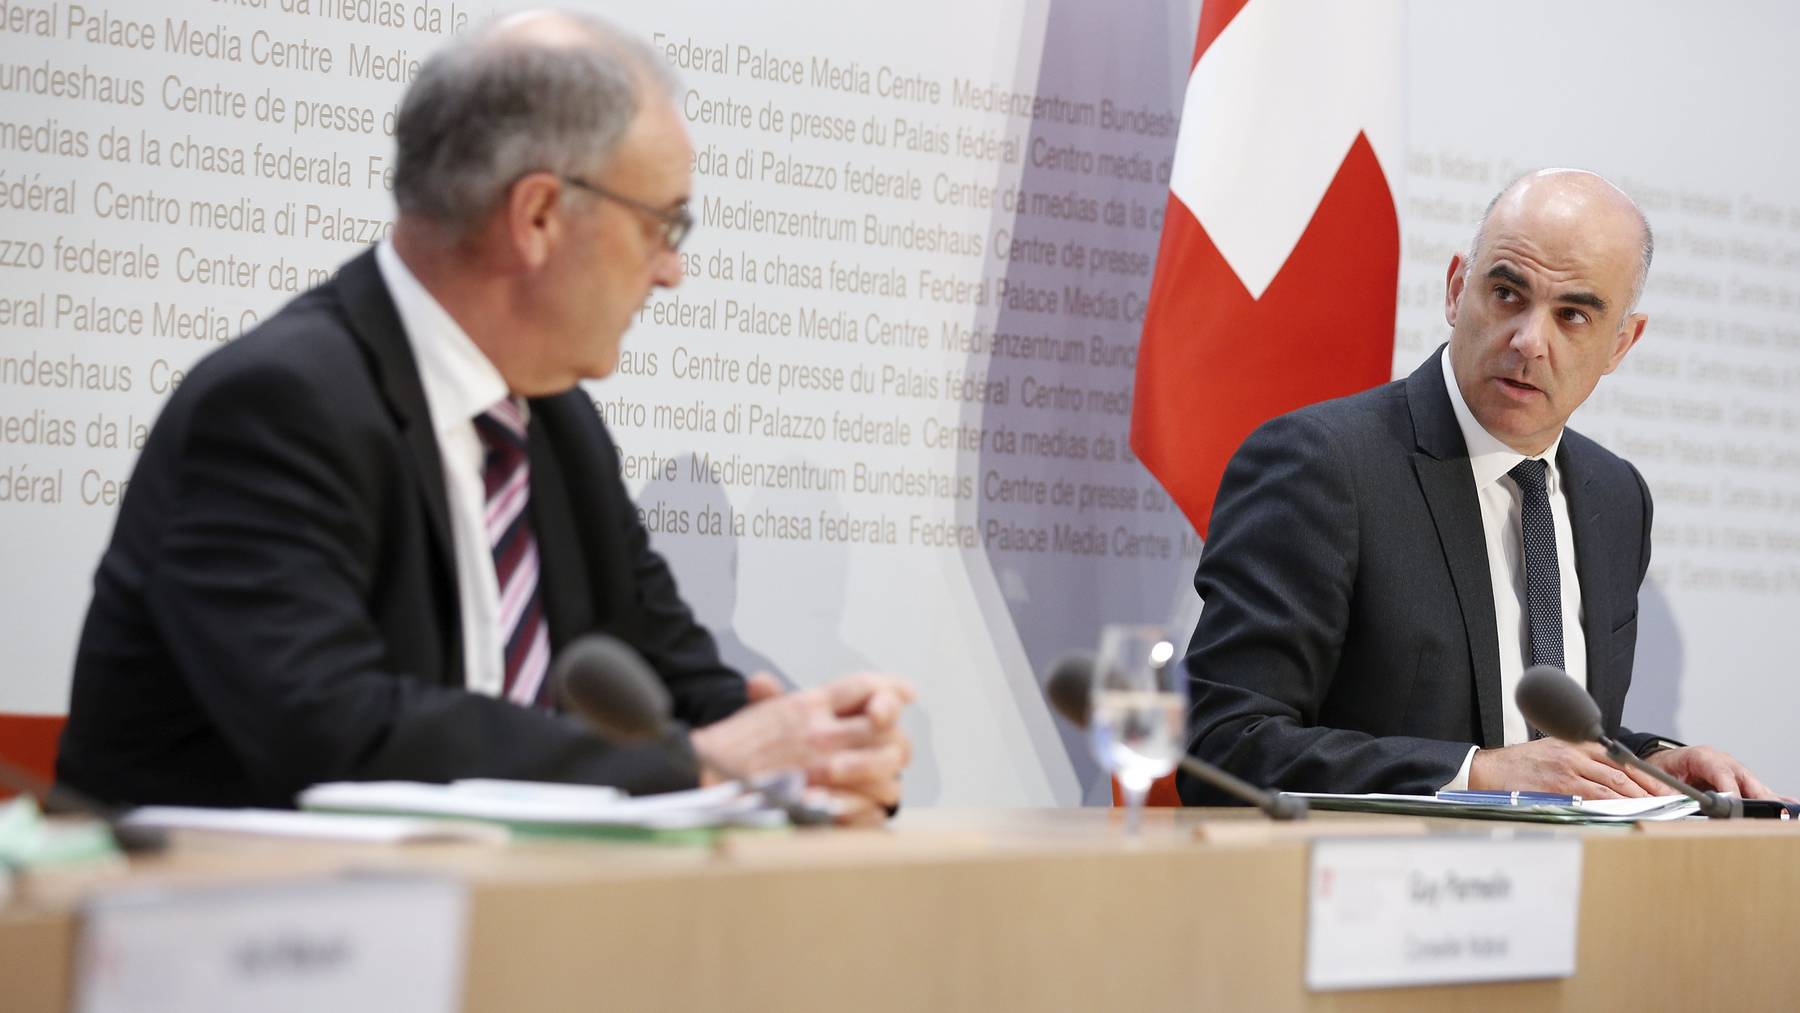 Gesundheits- und Kulturminister Alain Berset (r.) spricht an der Seite von Wirtschaftsminister Guy Parmelin am Freitag in Bern vor den Medien.